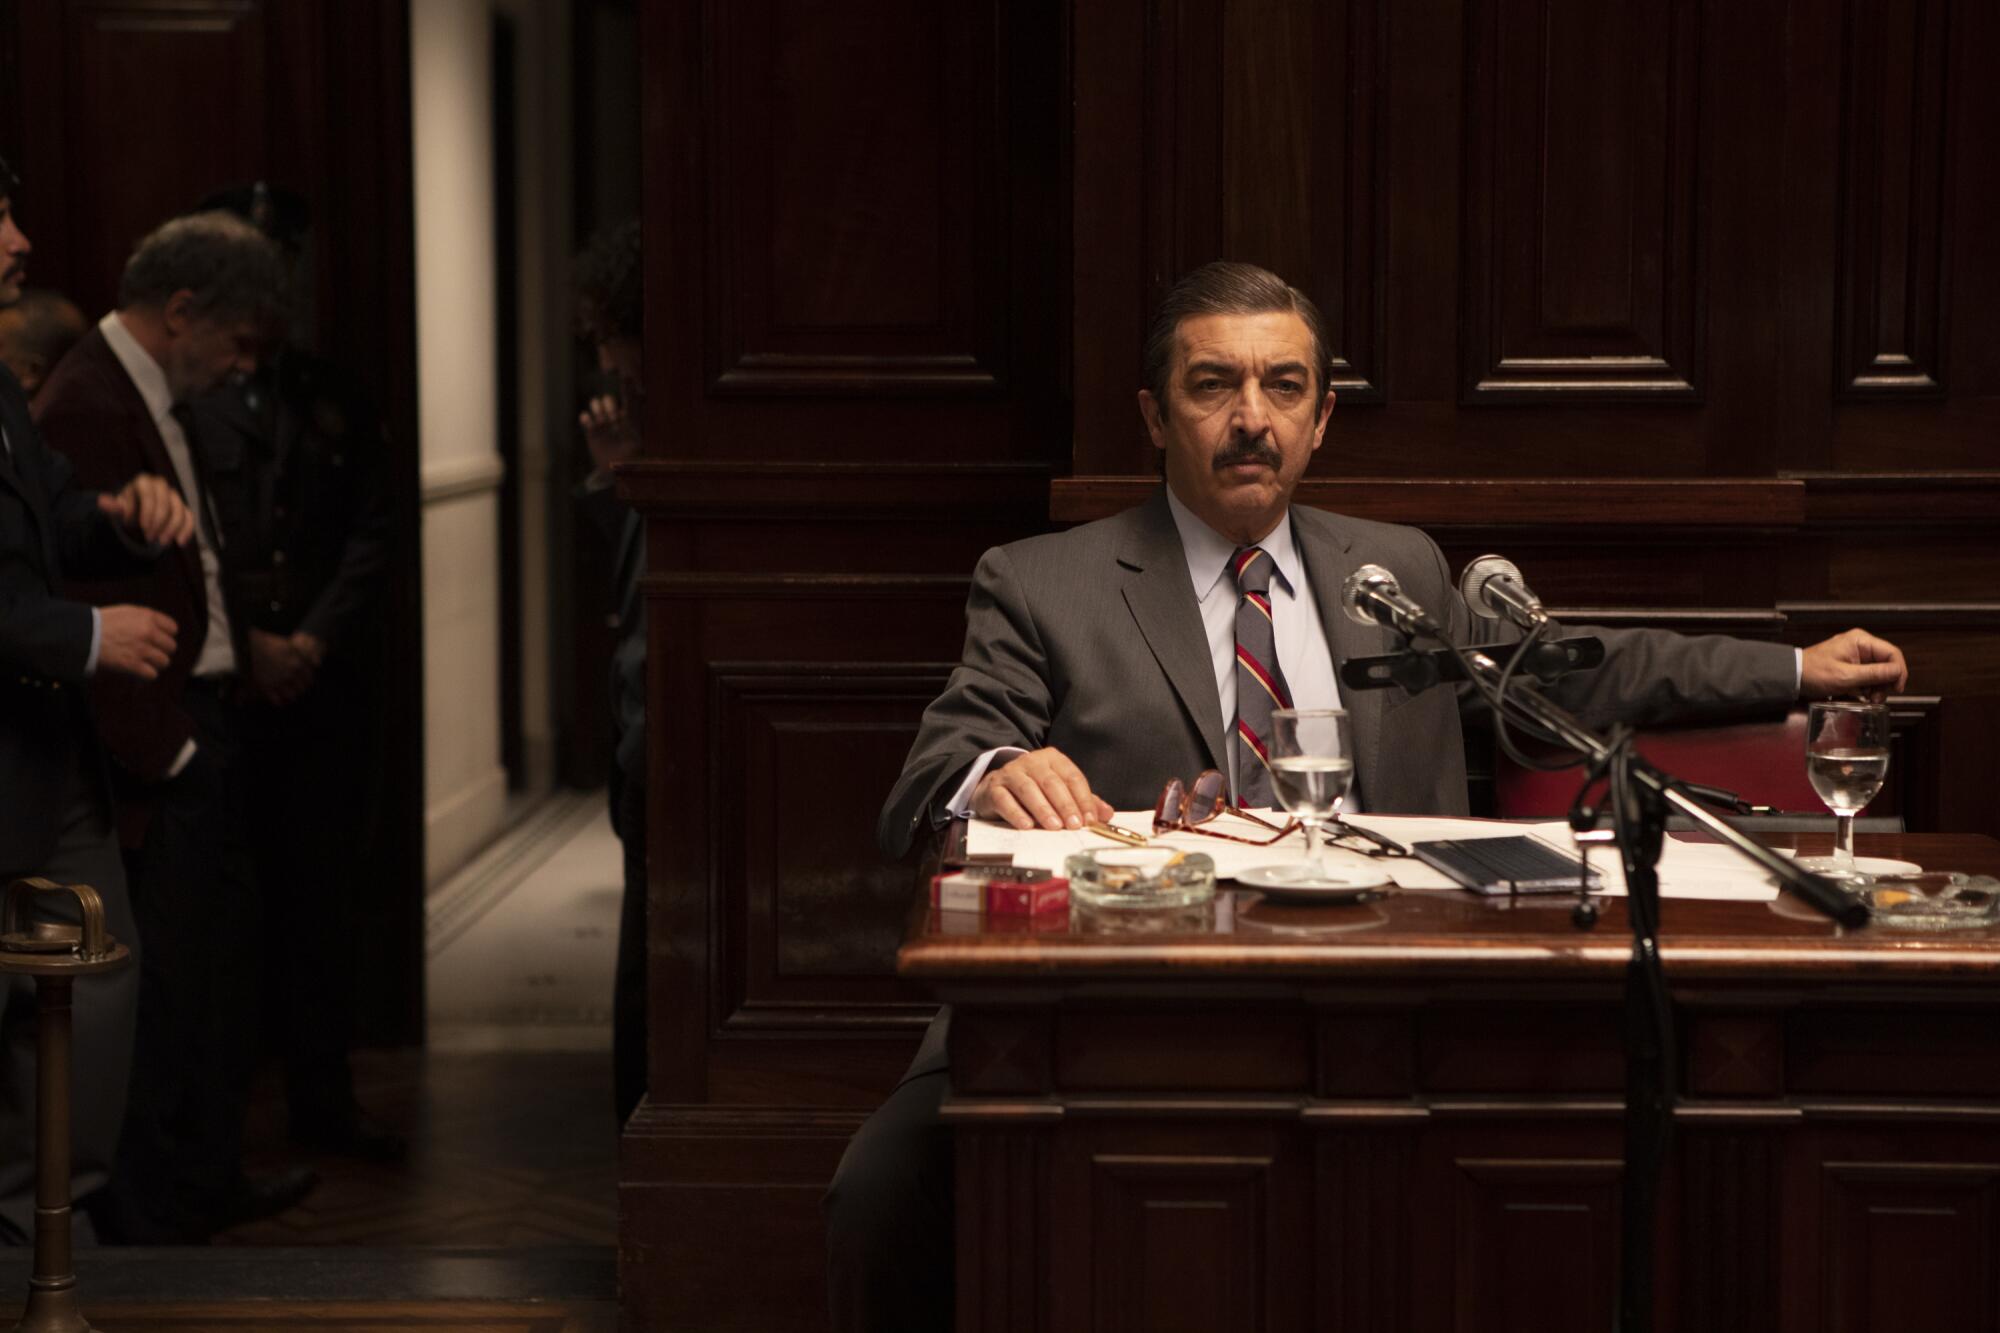 Ricardo Darín plays a federal prosecutor putting a military junta on trial in "Argentina, 1985."